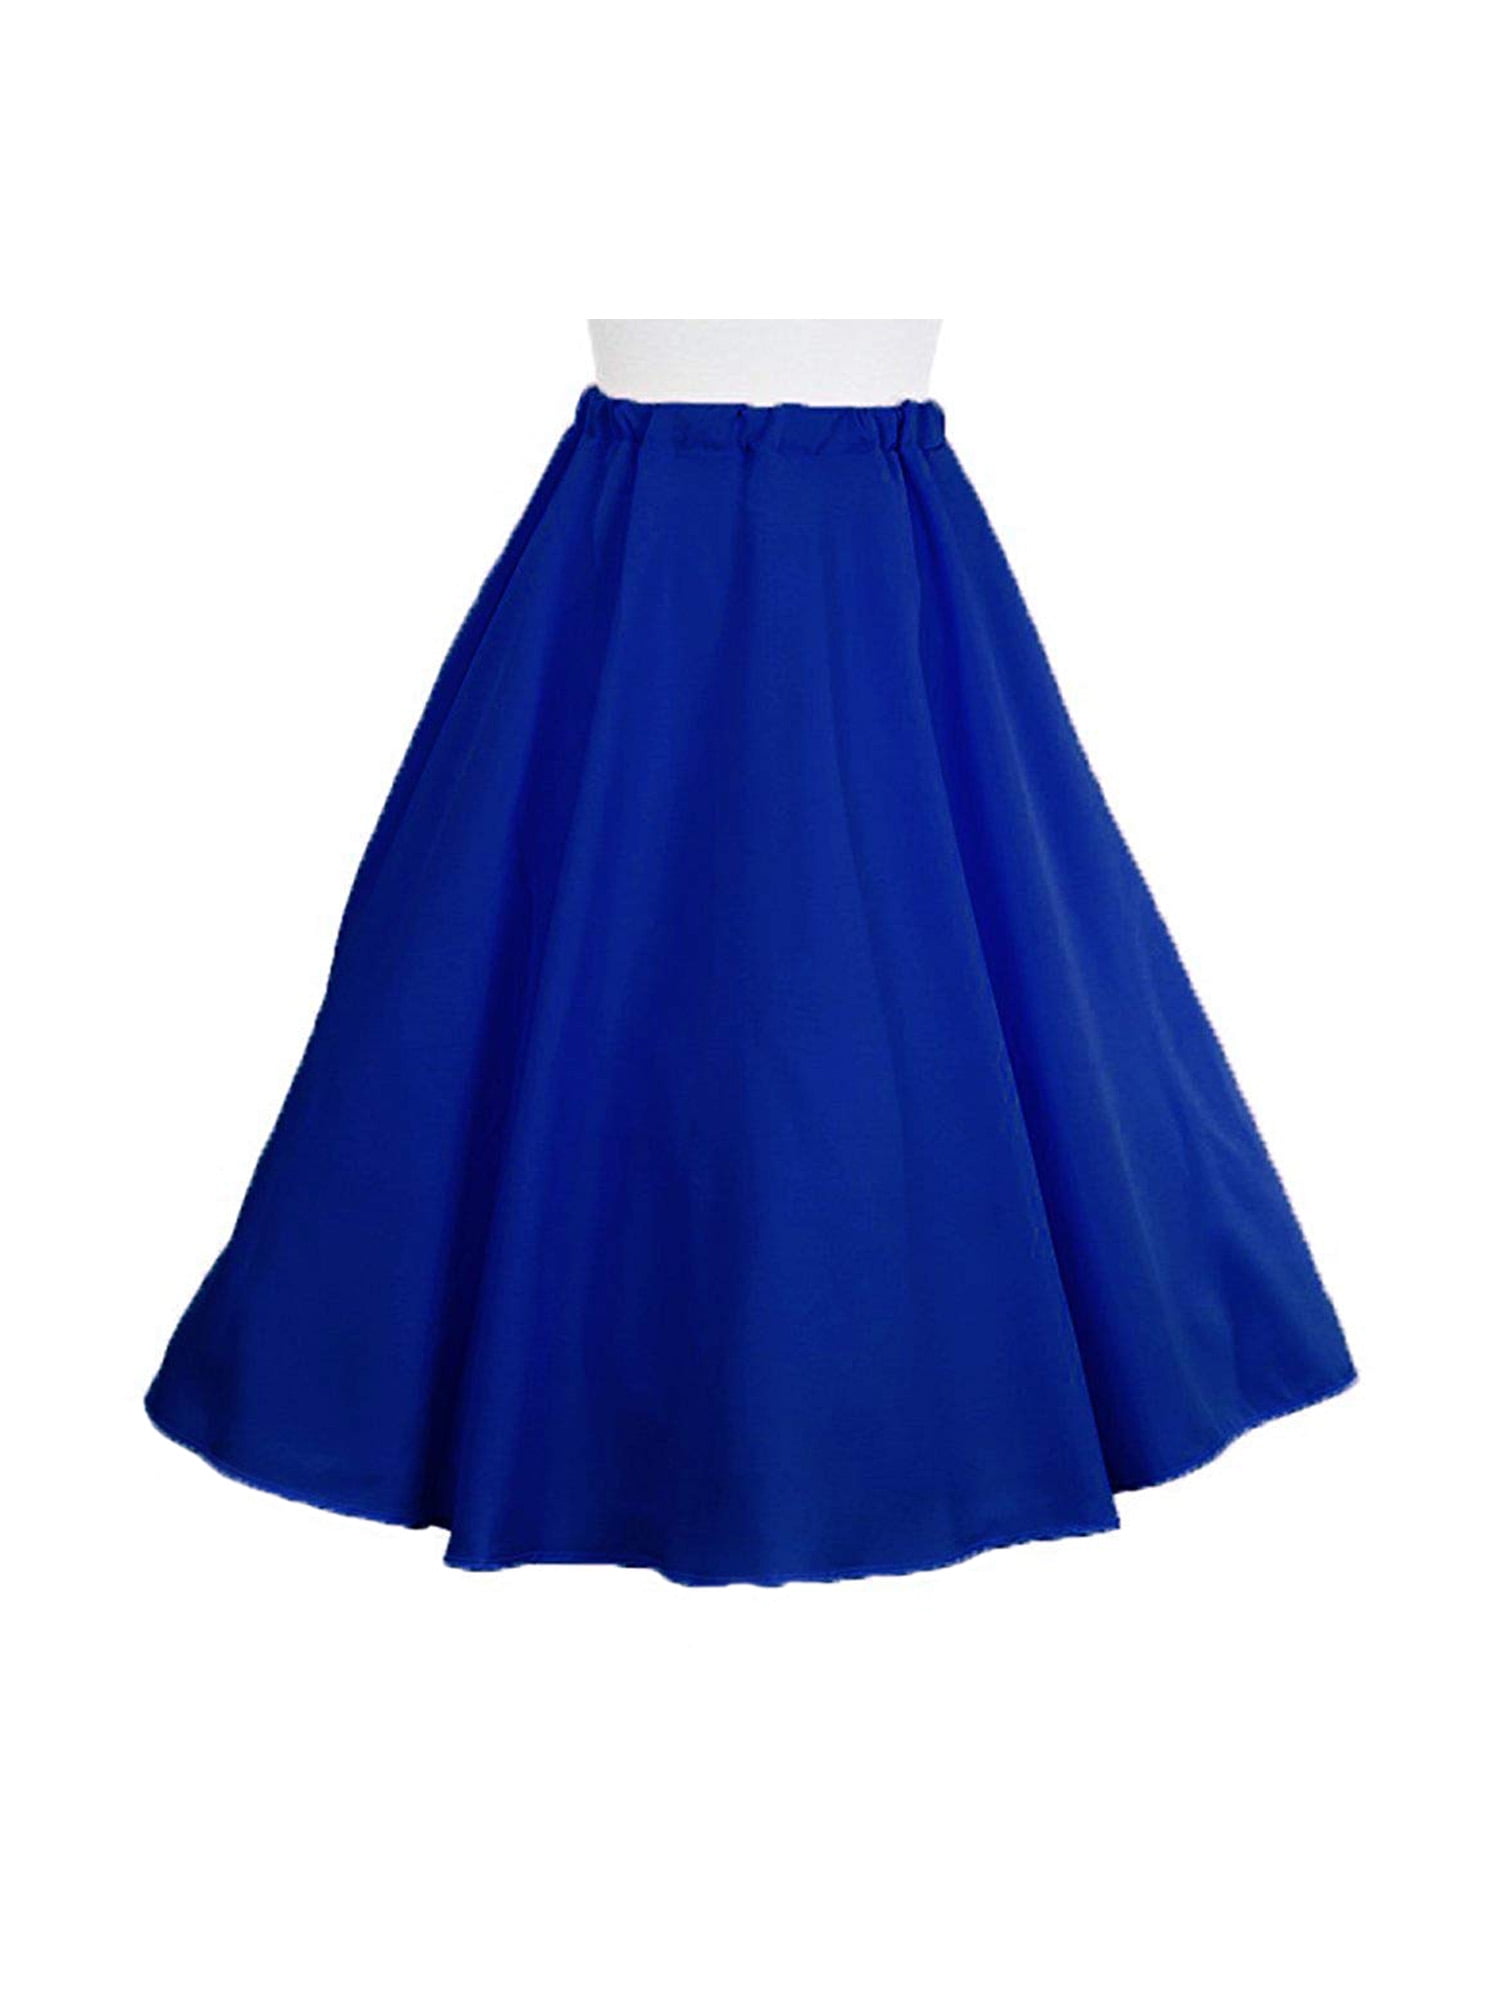 Blue Full Circle Skirt - 50s Style Twirl Skirt - Elastic Waist - L/XL